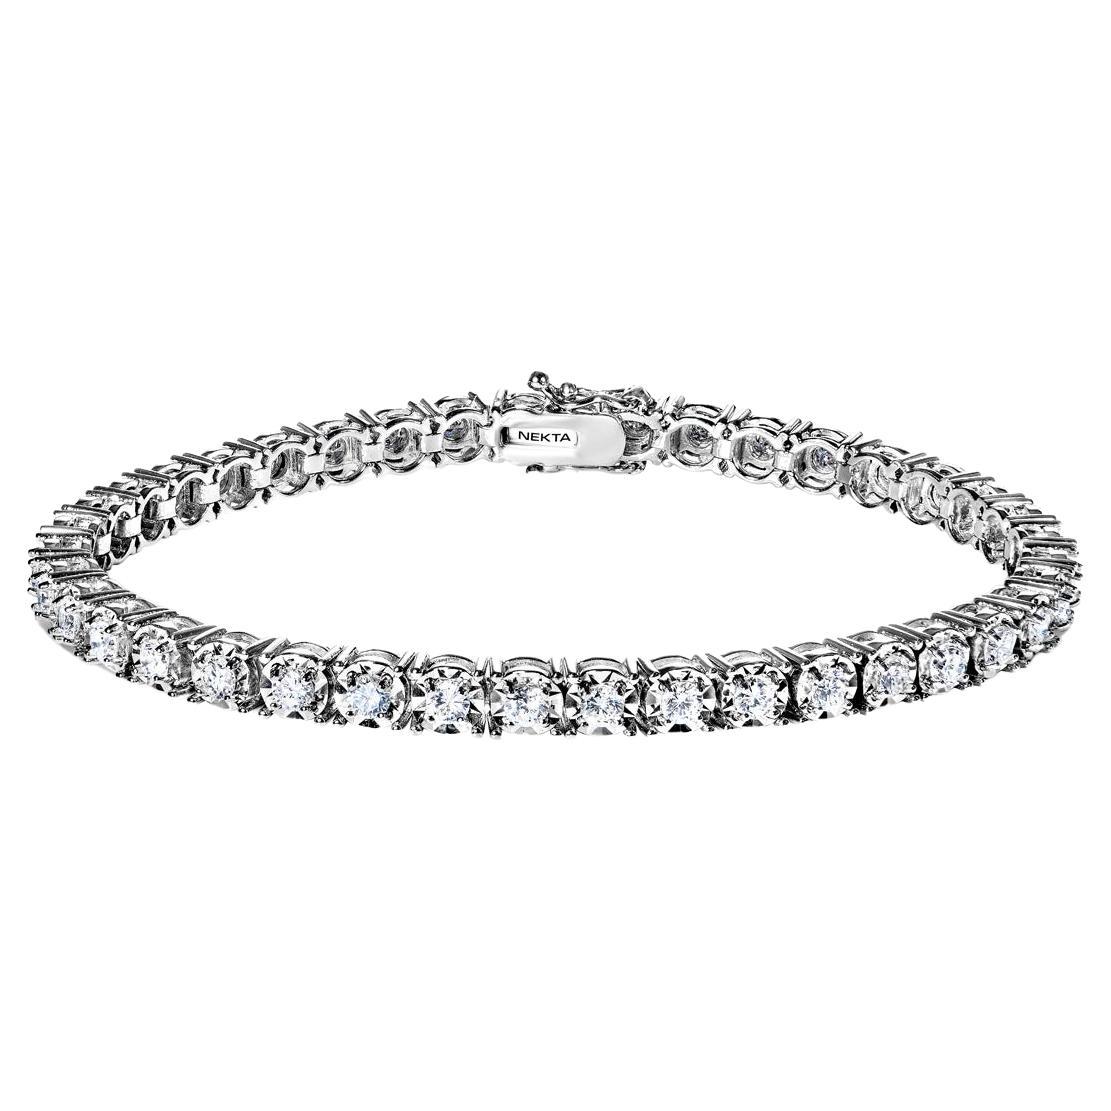 Bracelet tennis à rangée unique de diamants ronds et brillants de 3 carats certifiés